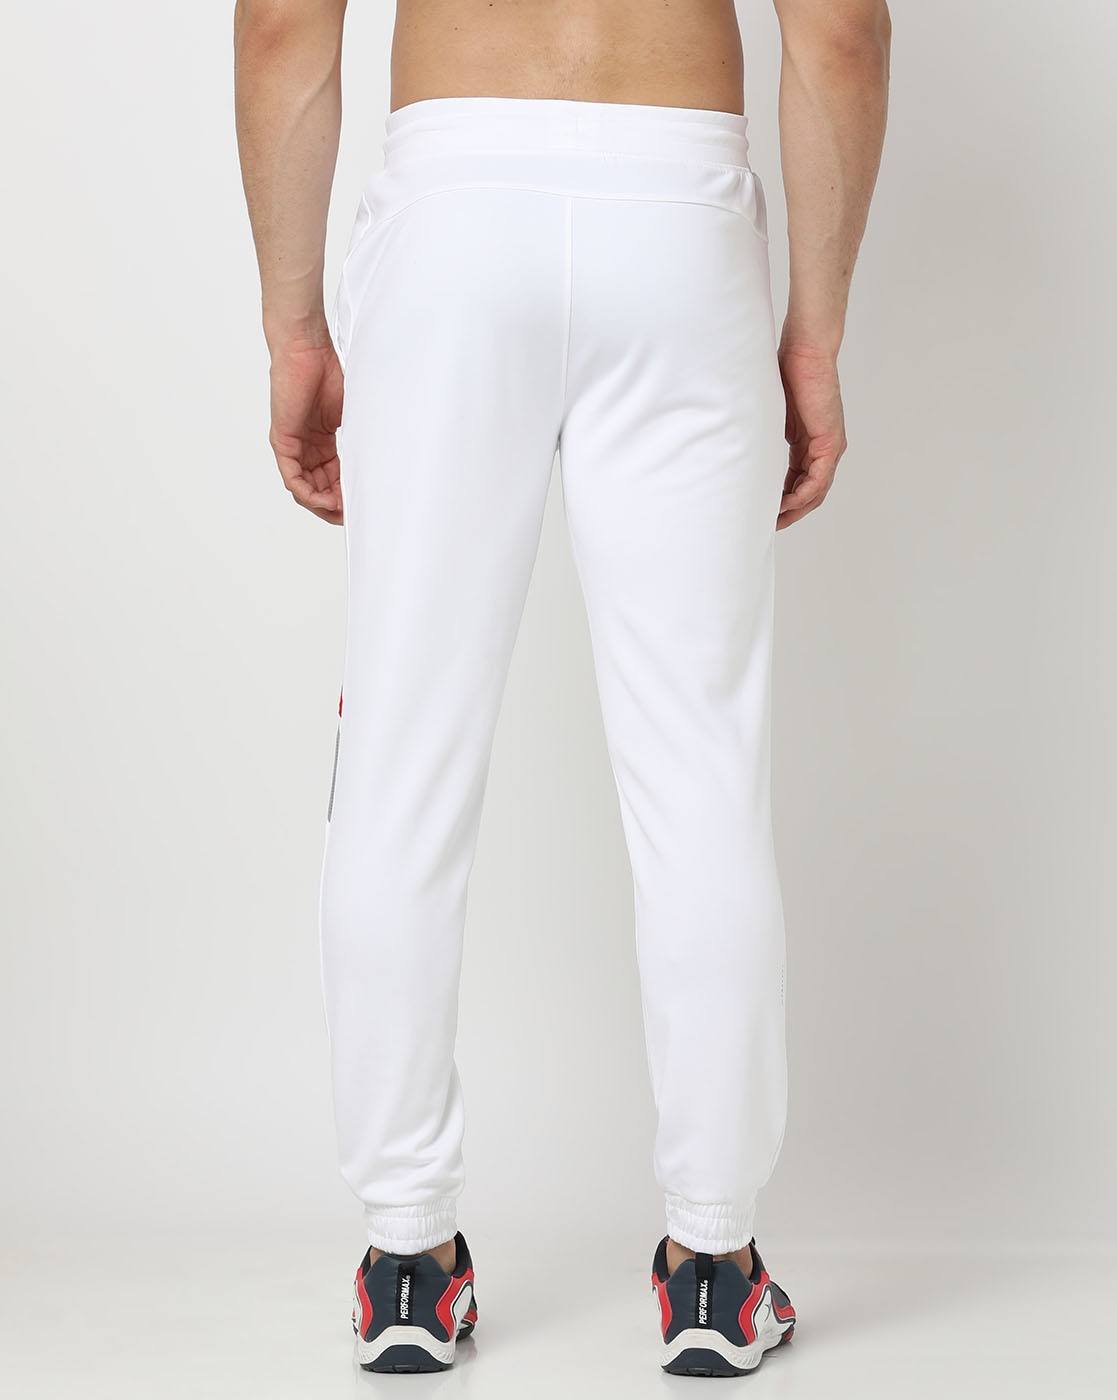 Buy Highlander Grey Slim Fit Track Pant for Men Online at Rs.531 - Ketch